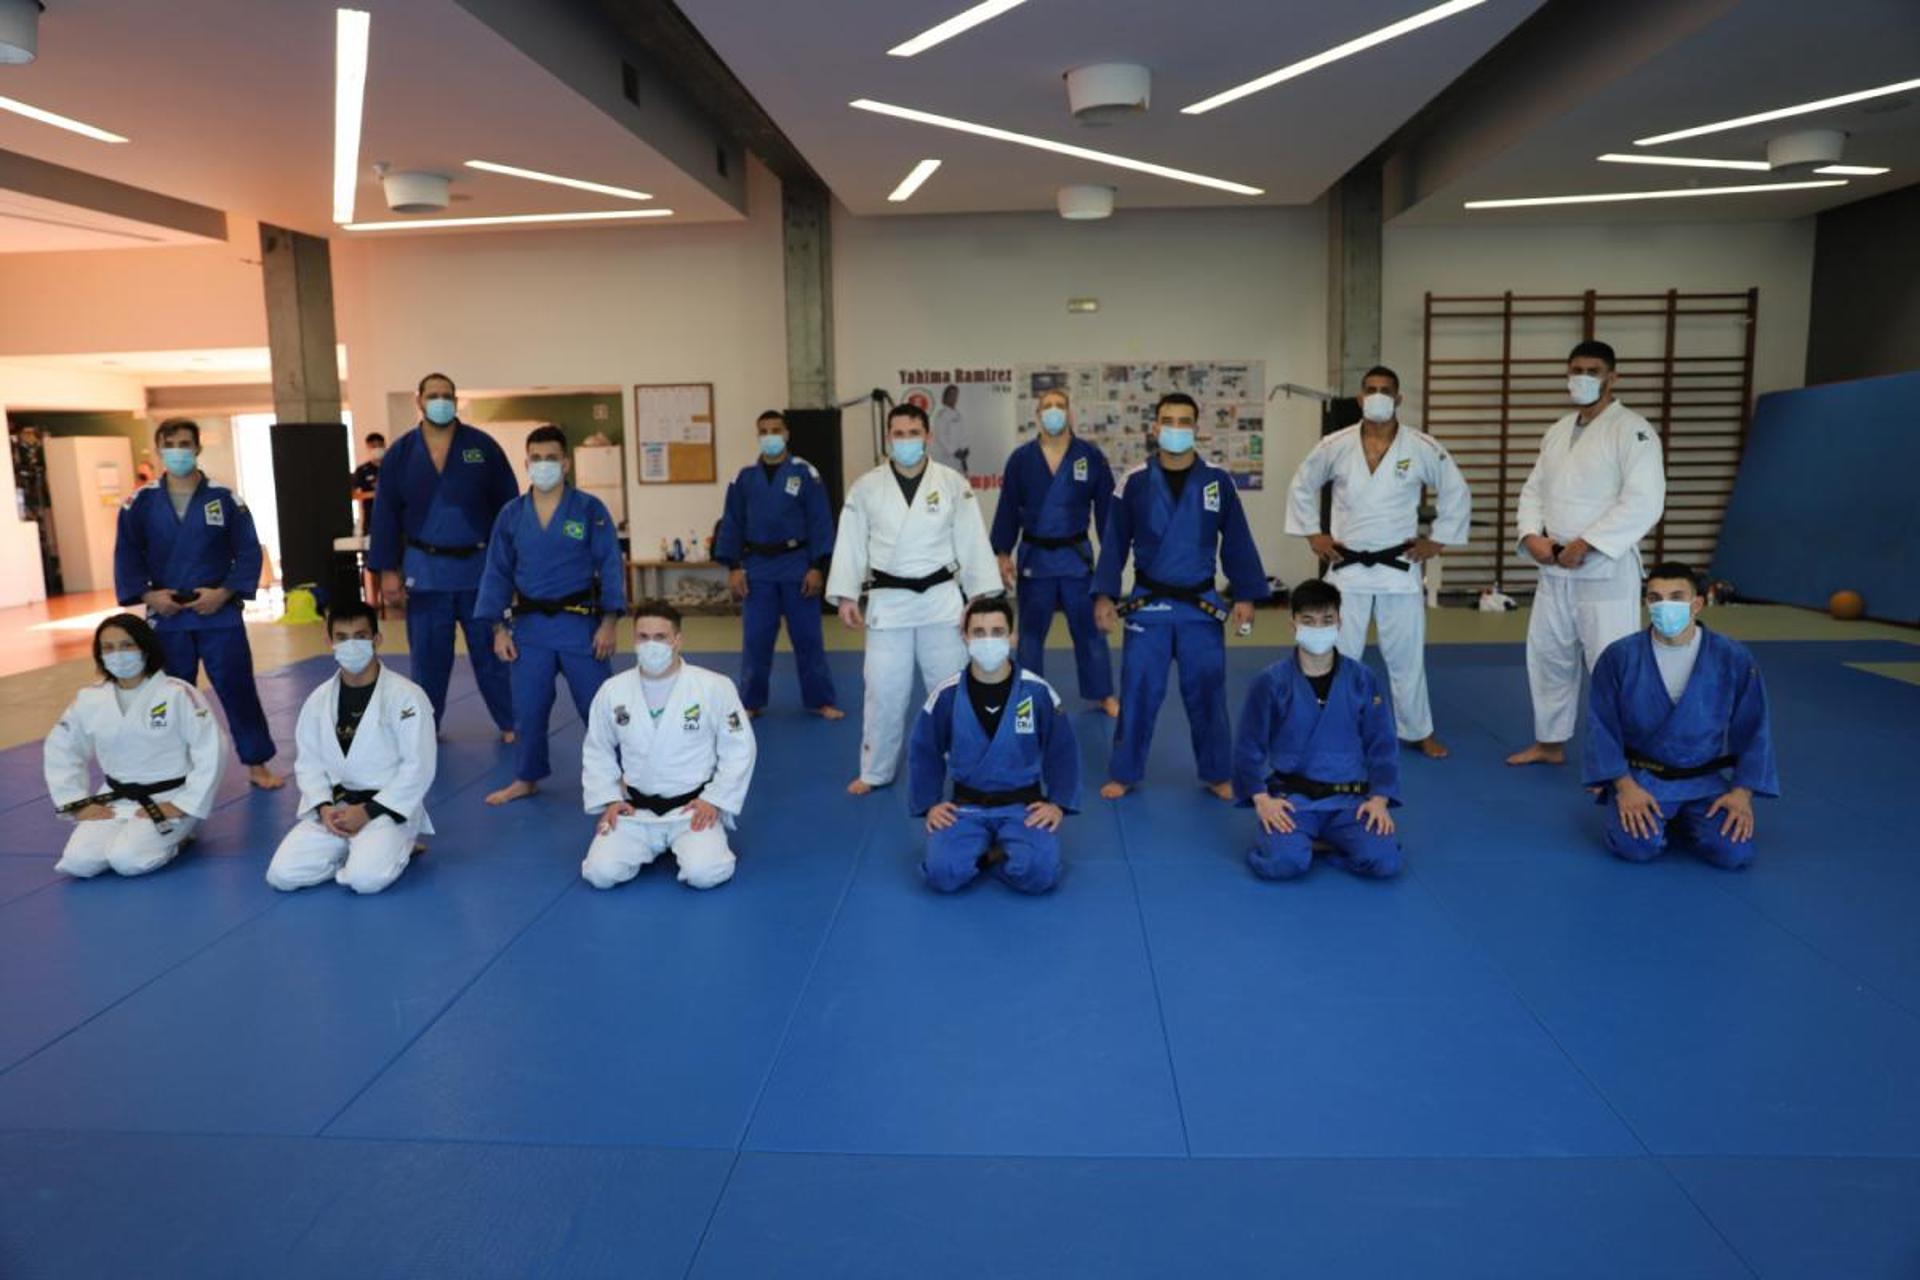 Judocas brasileiros treinam em Portugal (Foto: Divulgação)